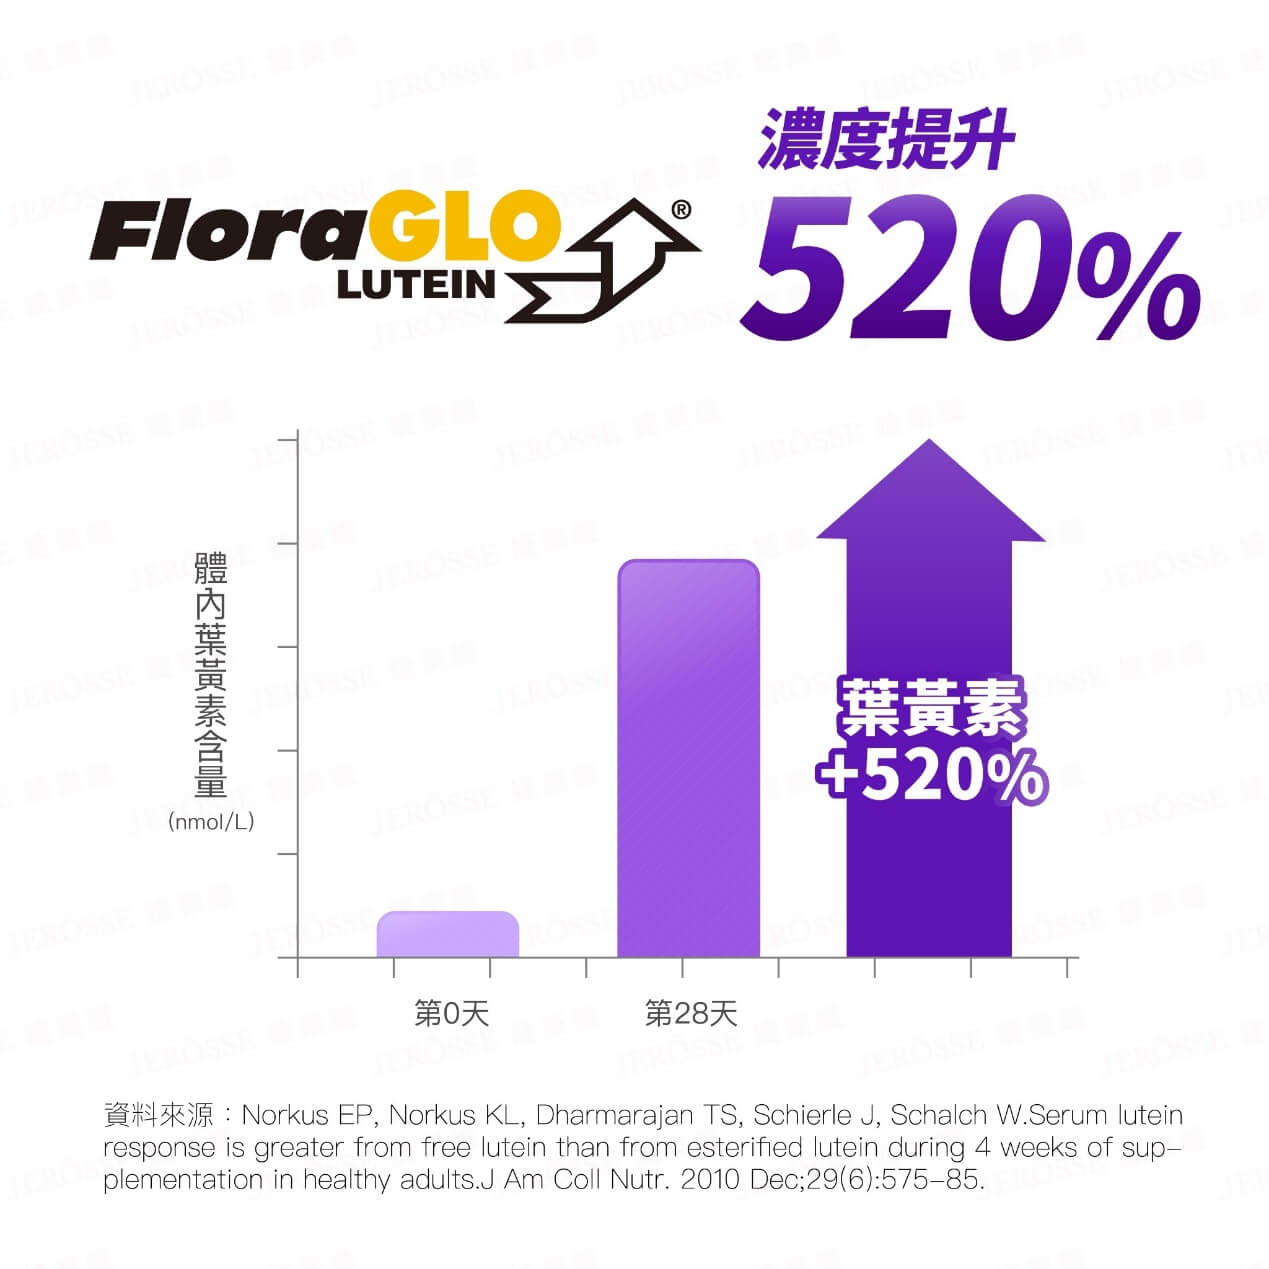 FloraGLO® 專利游離型葉黃素經原廠實證 28天有效增加體內葉黃素濃度達520%